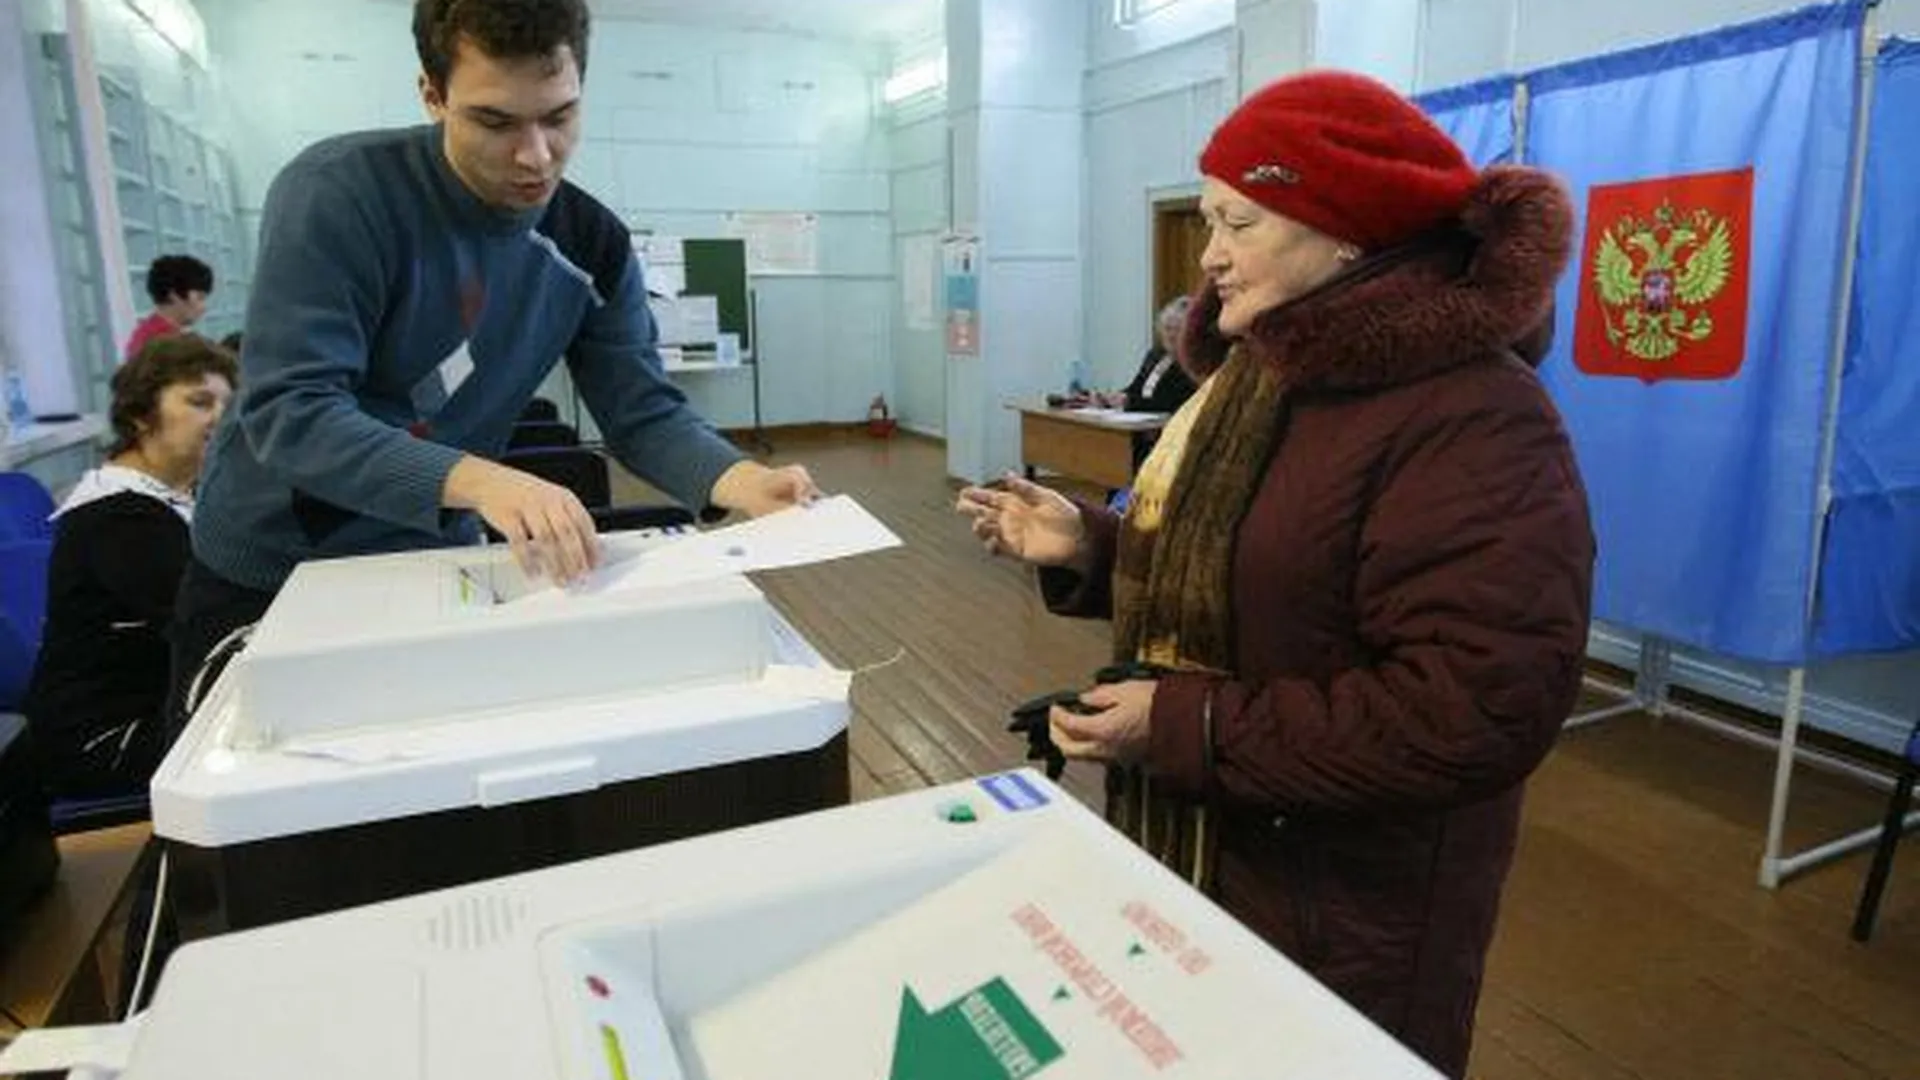 Явка на выборах в области на 12:00 составила 7,3% - Вильданов